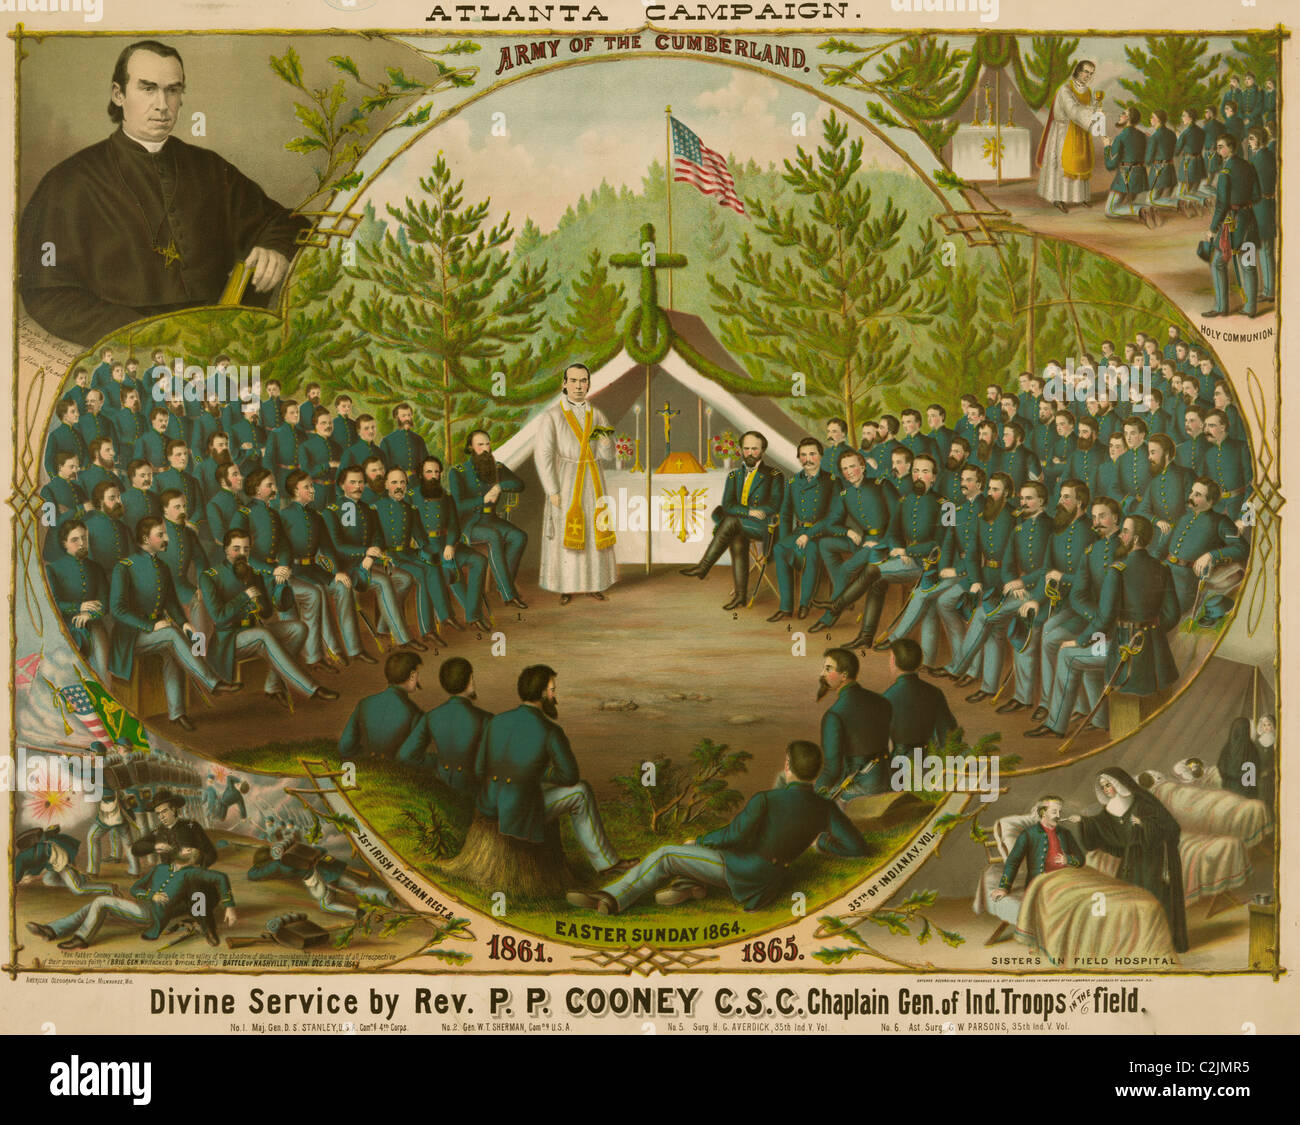 Campagna di Atlanta. Esercito di The Cumberland. Il servizio divino di p. P.P. Cooney, C.S.C. Cappellano gen. di Ind. Truppe in campo Foto Stock